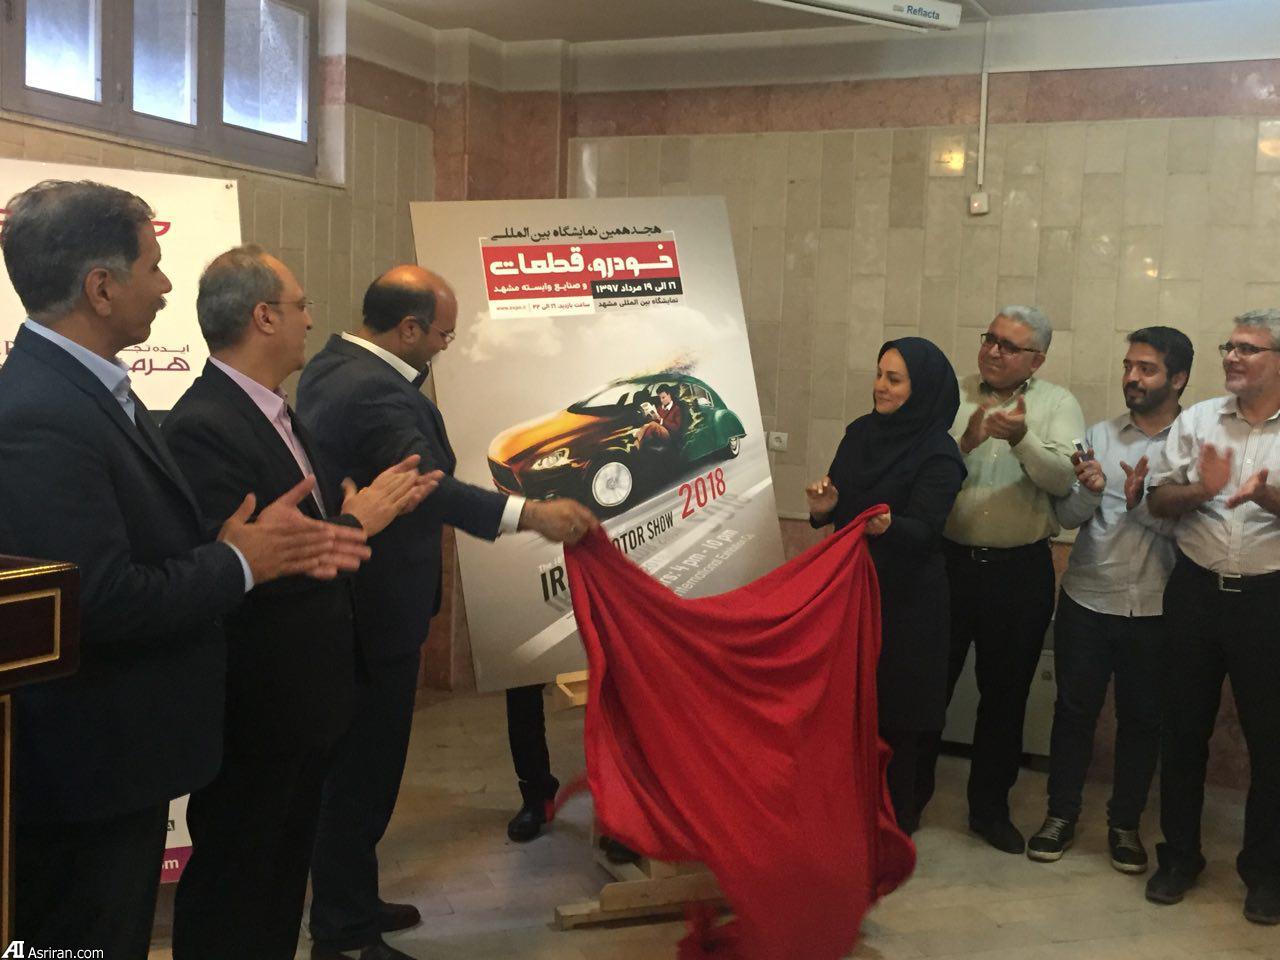 حضور فعال 150 شرکت داخلی و خارجی در نمایشگاه خودروی مشهد/ 